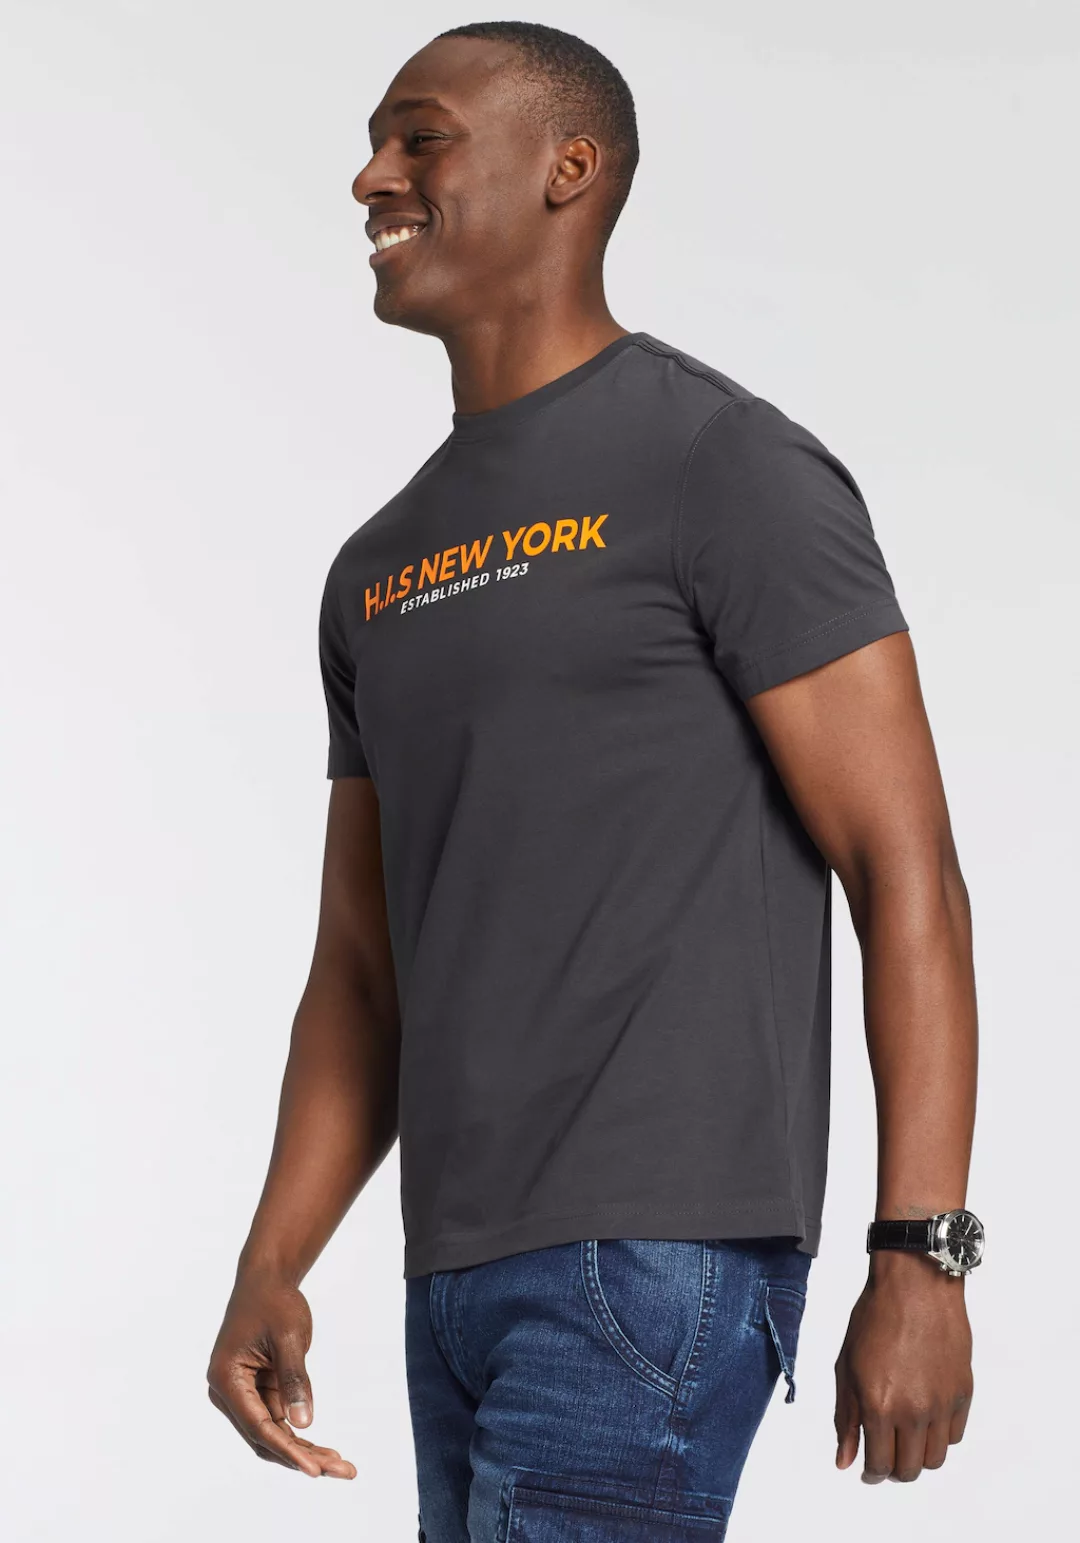 H.I.S T-Shirt, Mit großem Frontprint günstig online kaufen